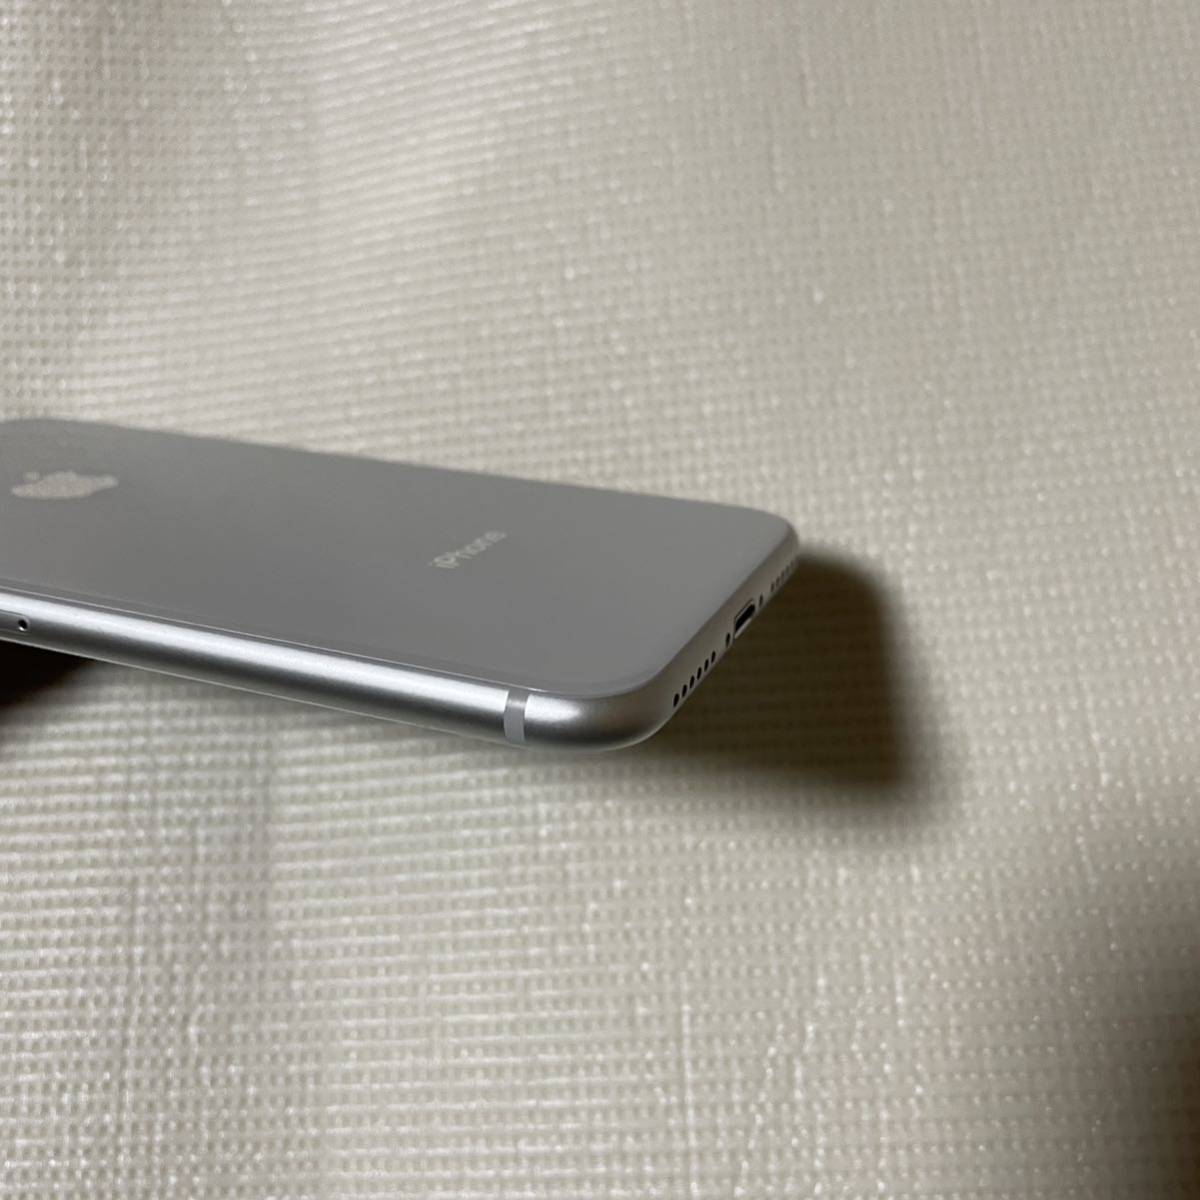 送料無料 超美品 SIMフリー iPhone8 256GB シルバー バッテリー最大 